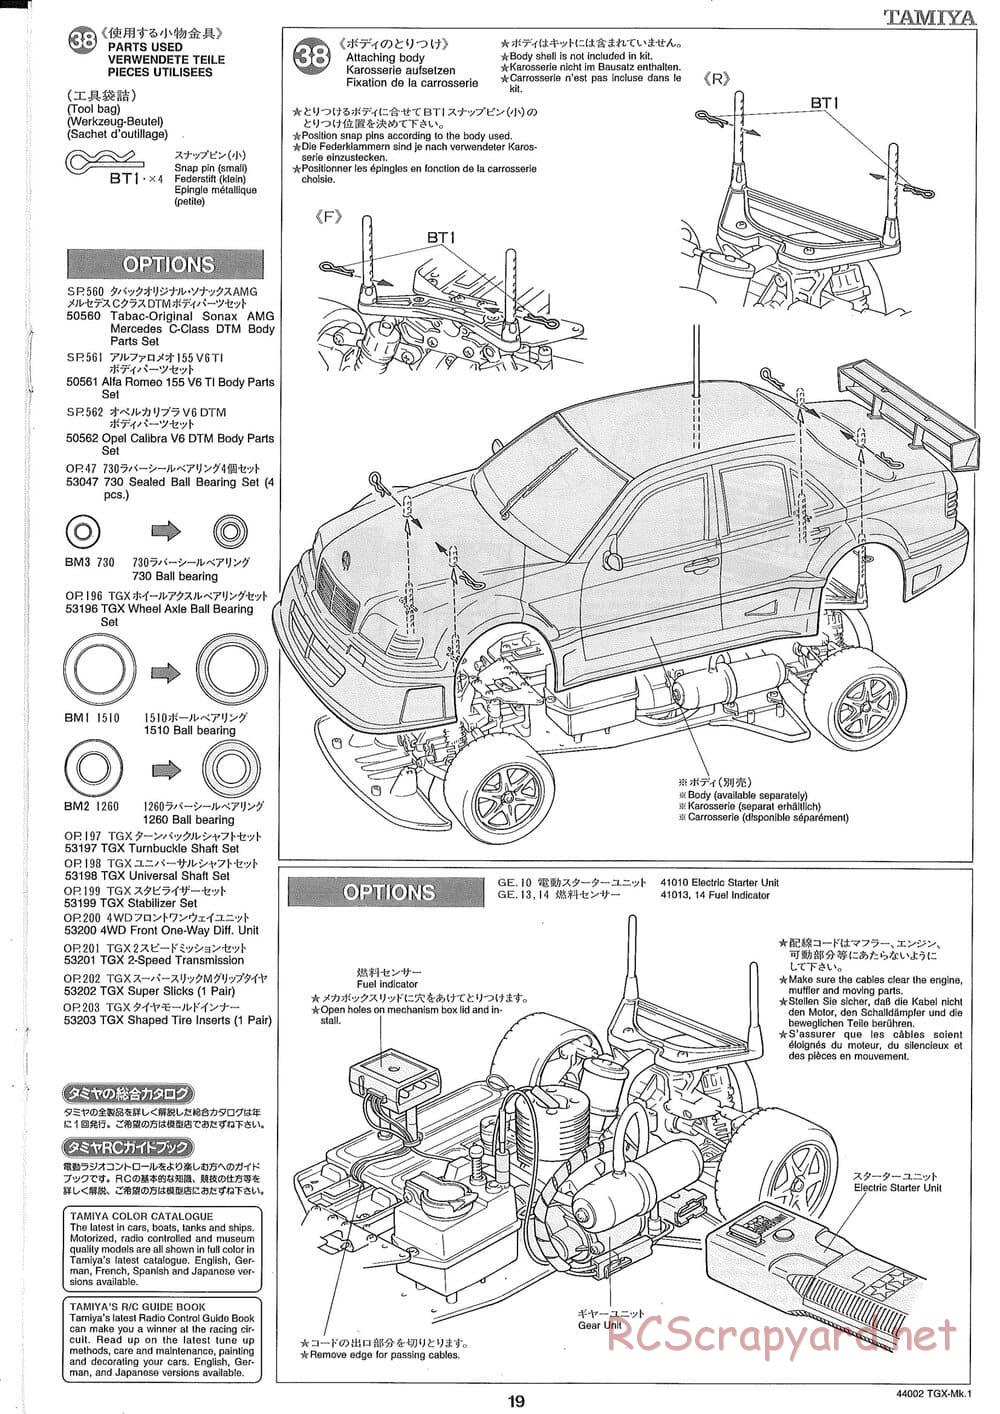 Tamiya - TGX Mk.1 TS Chassis Chassis - Manual - Page 19